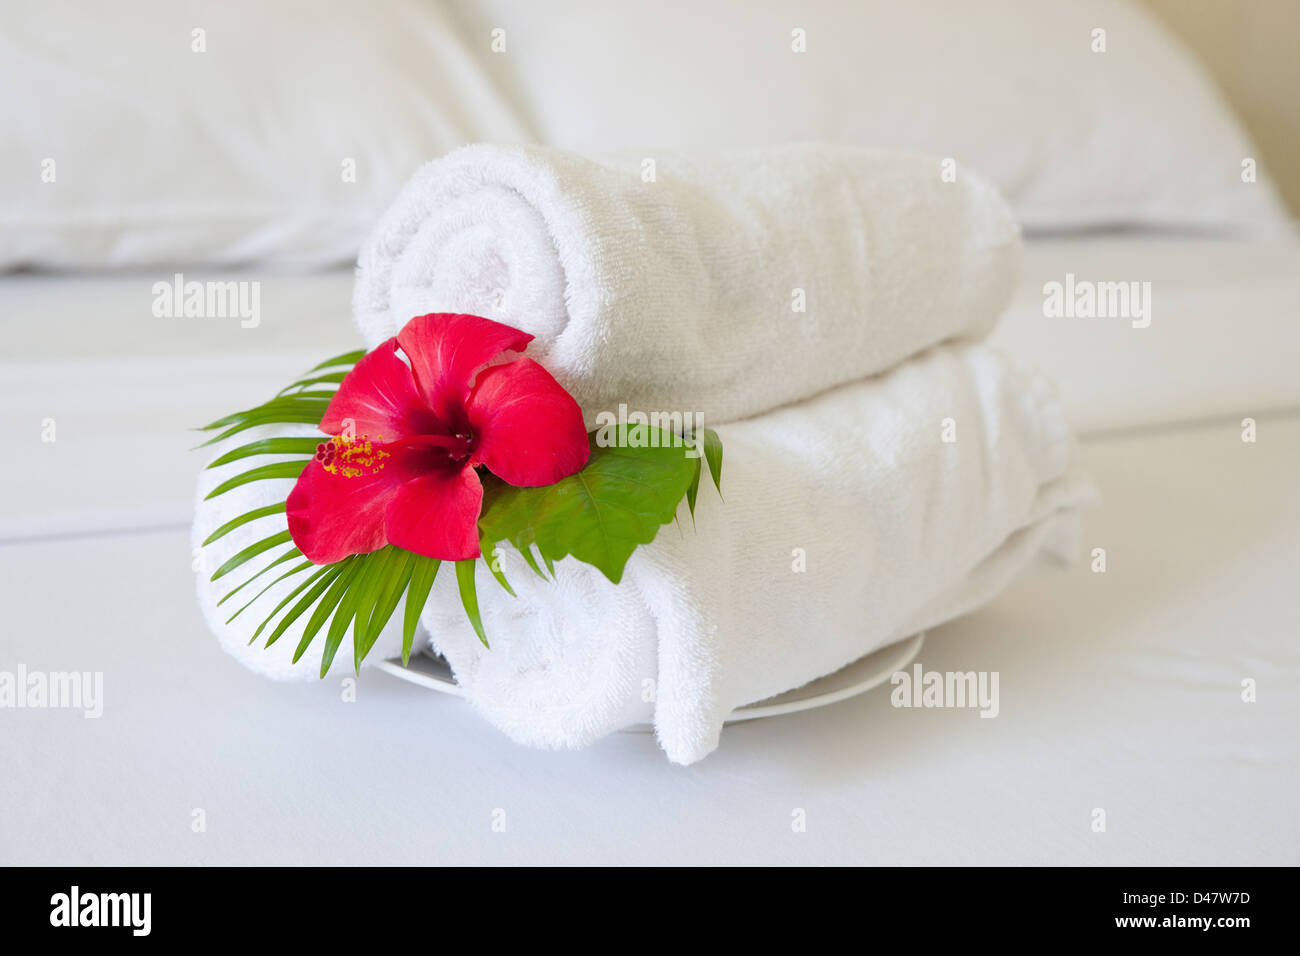 Asciugamani piegati sul letto in camera di albergo Foto Stock